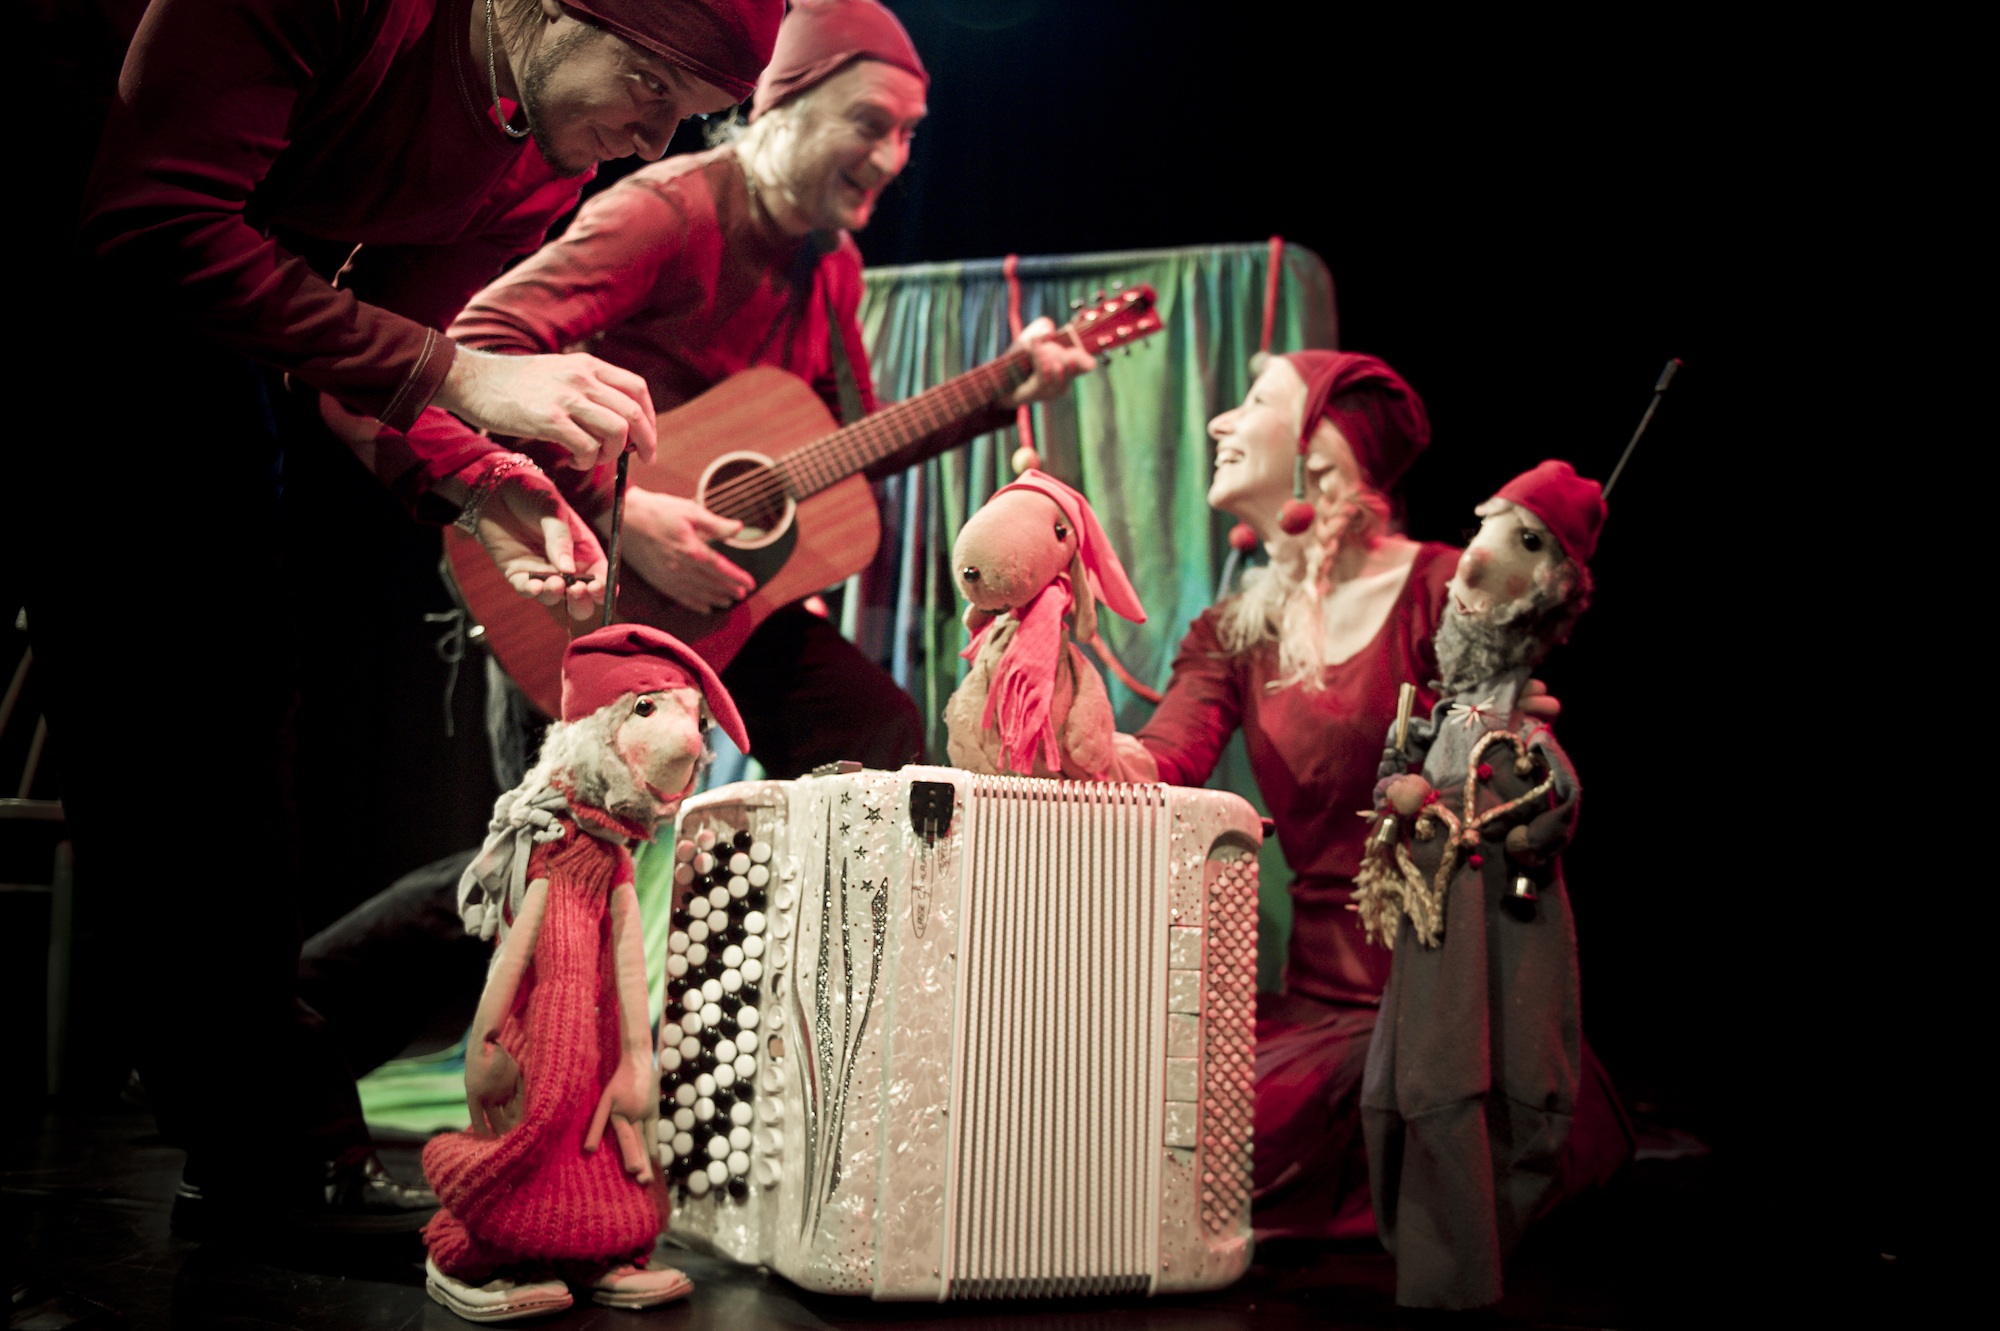 Haitari, jonka vieressä ja päällä Duppaduulix-nukke ja kaksi tonttua (nukketeatterinukkeja). Kolme nukeillanäyttelijää, joista yksi soittaa kitaraa, punaisissa vaatteissa ja tonttulakeissa. Nukketeatteri Sampo